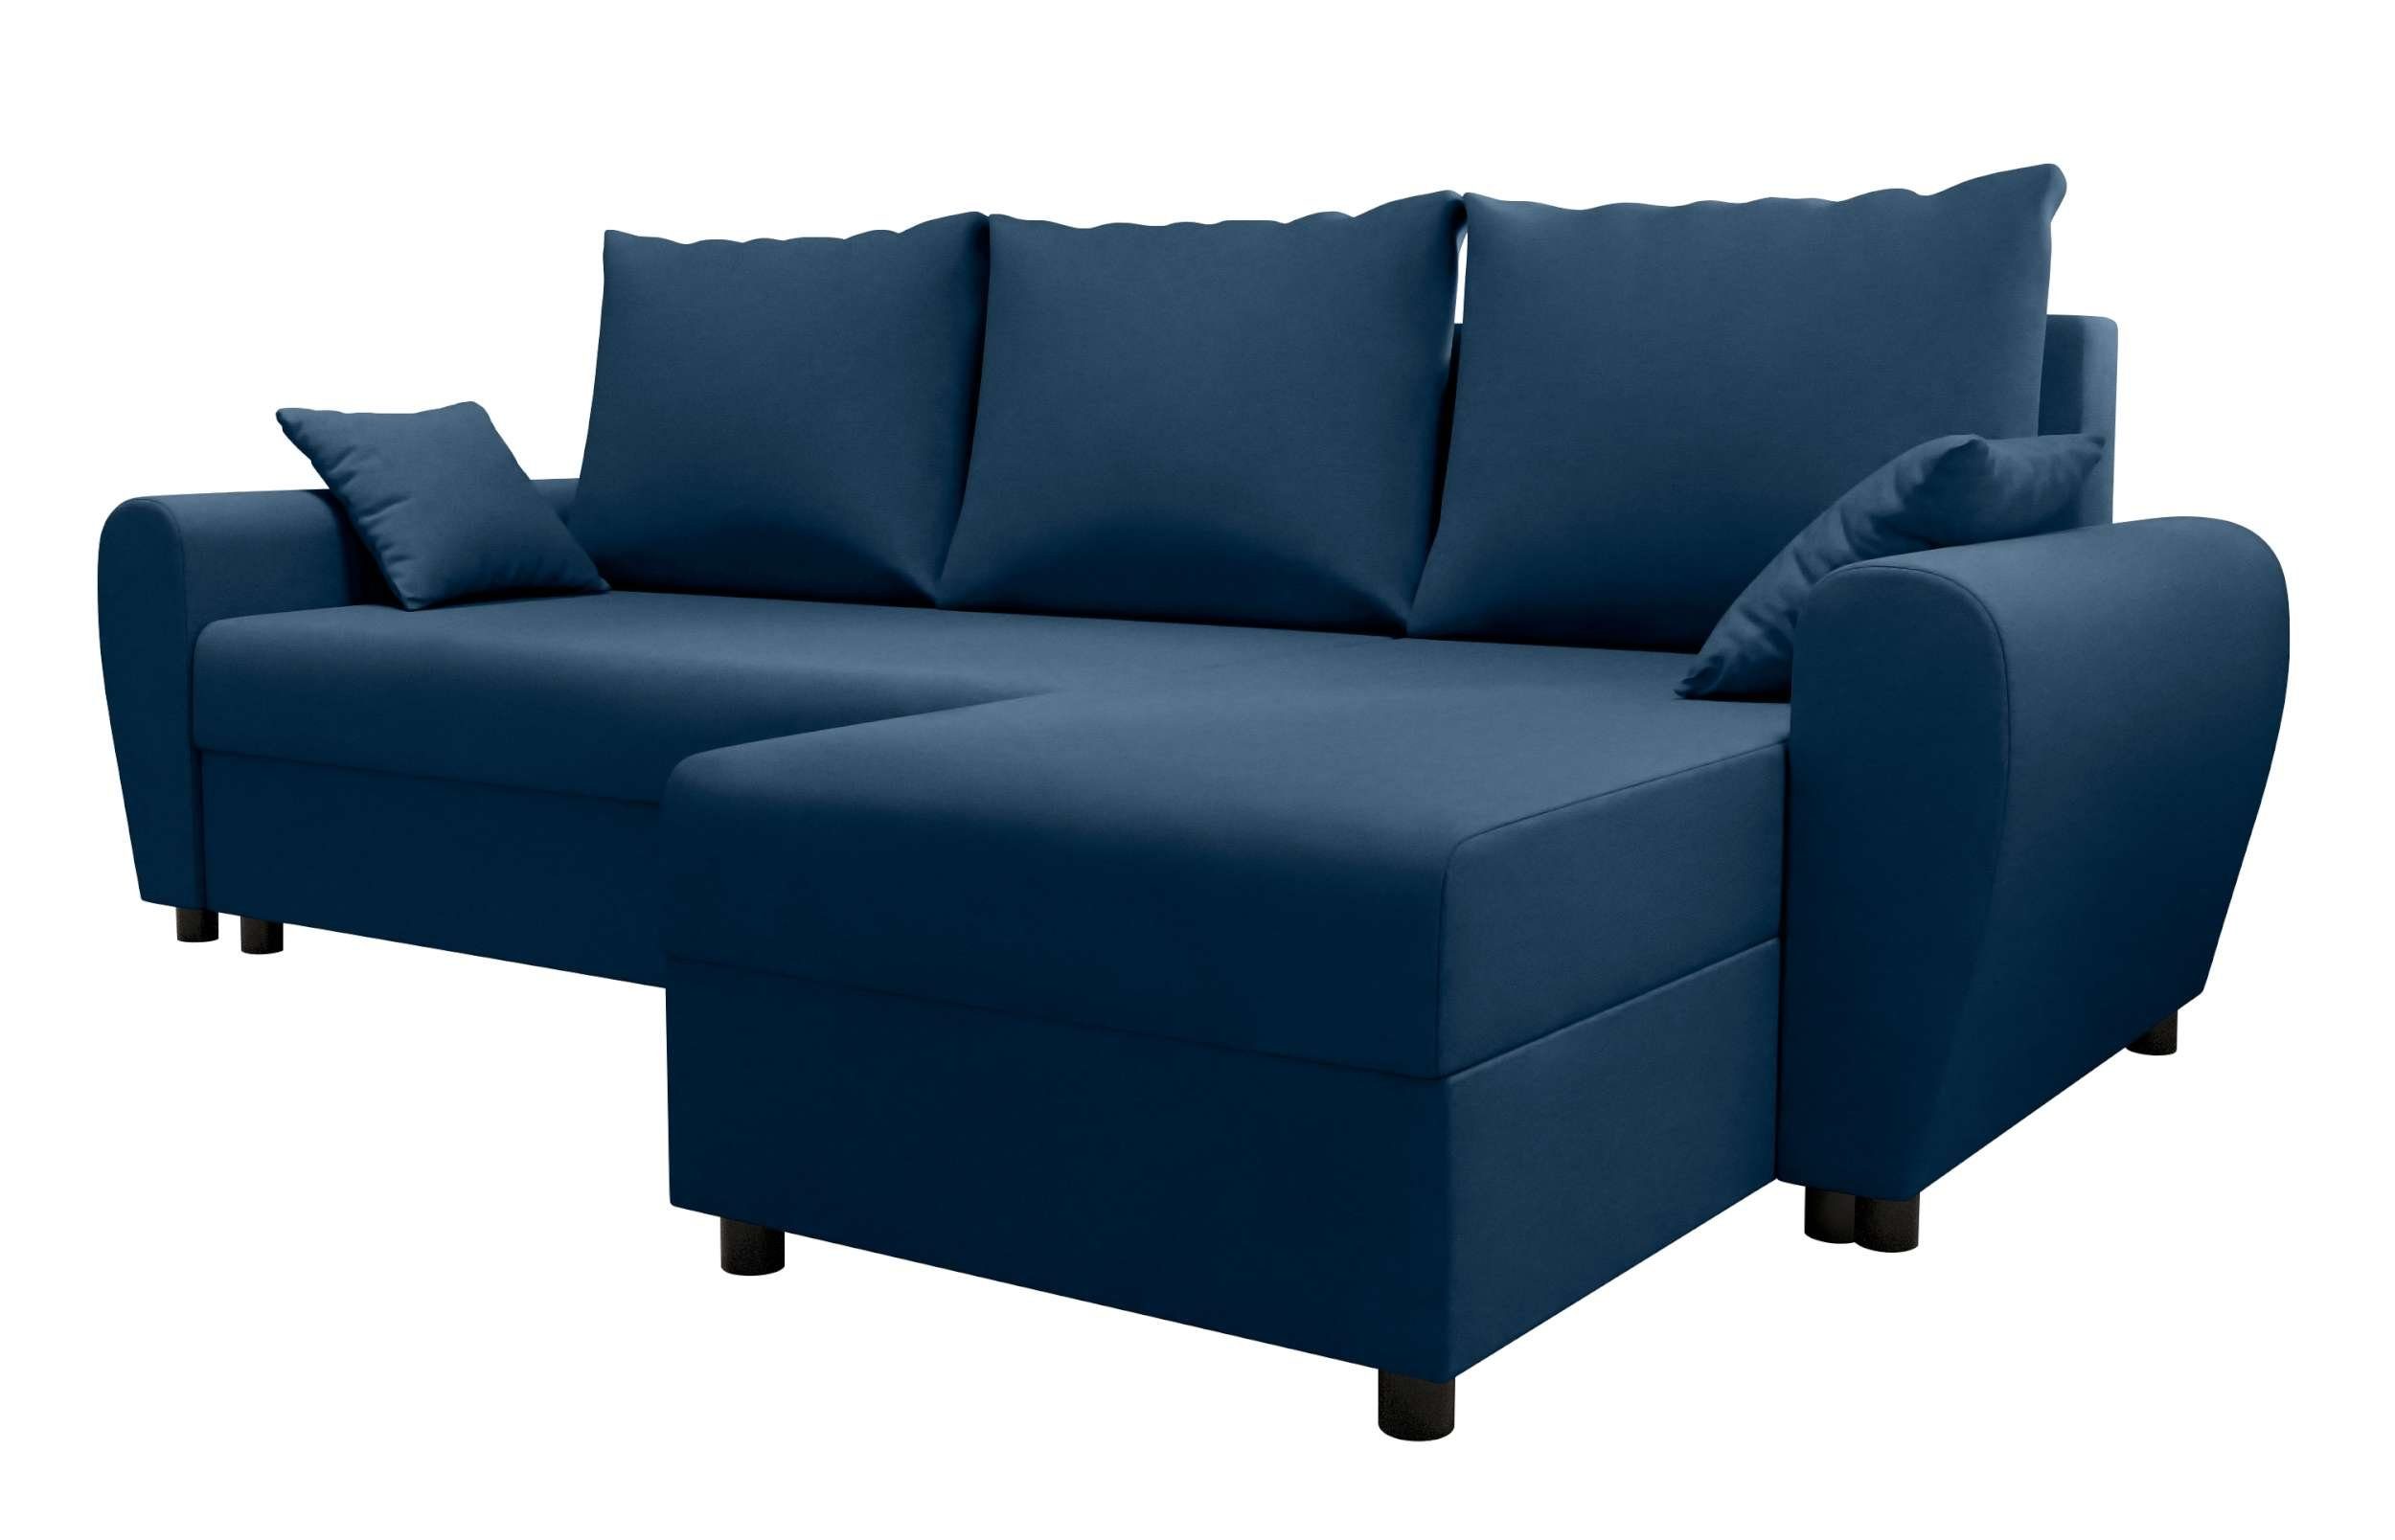 Ecksofa Sitzkomfort, L-Form, Melina, Bettfunktion, Design Modern mit Sofa, Bettkasten, Eckcouch, Stylefy mit